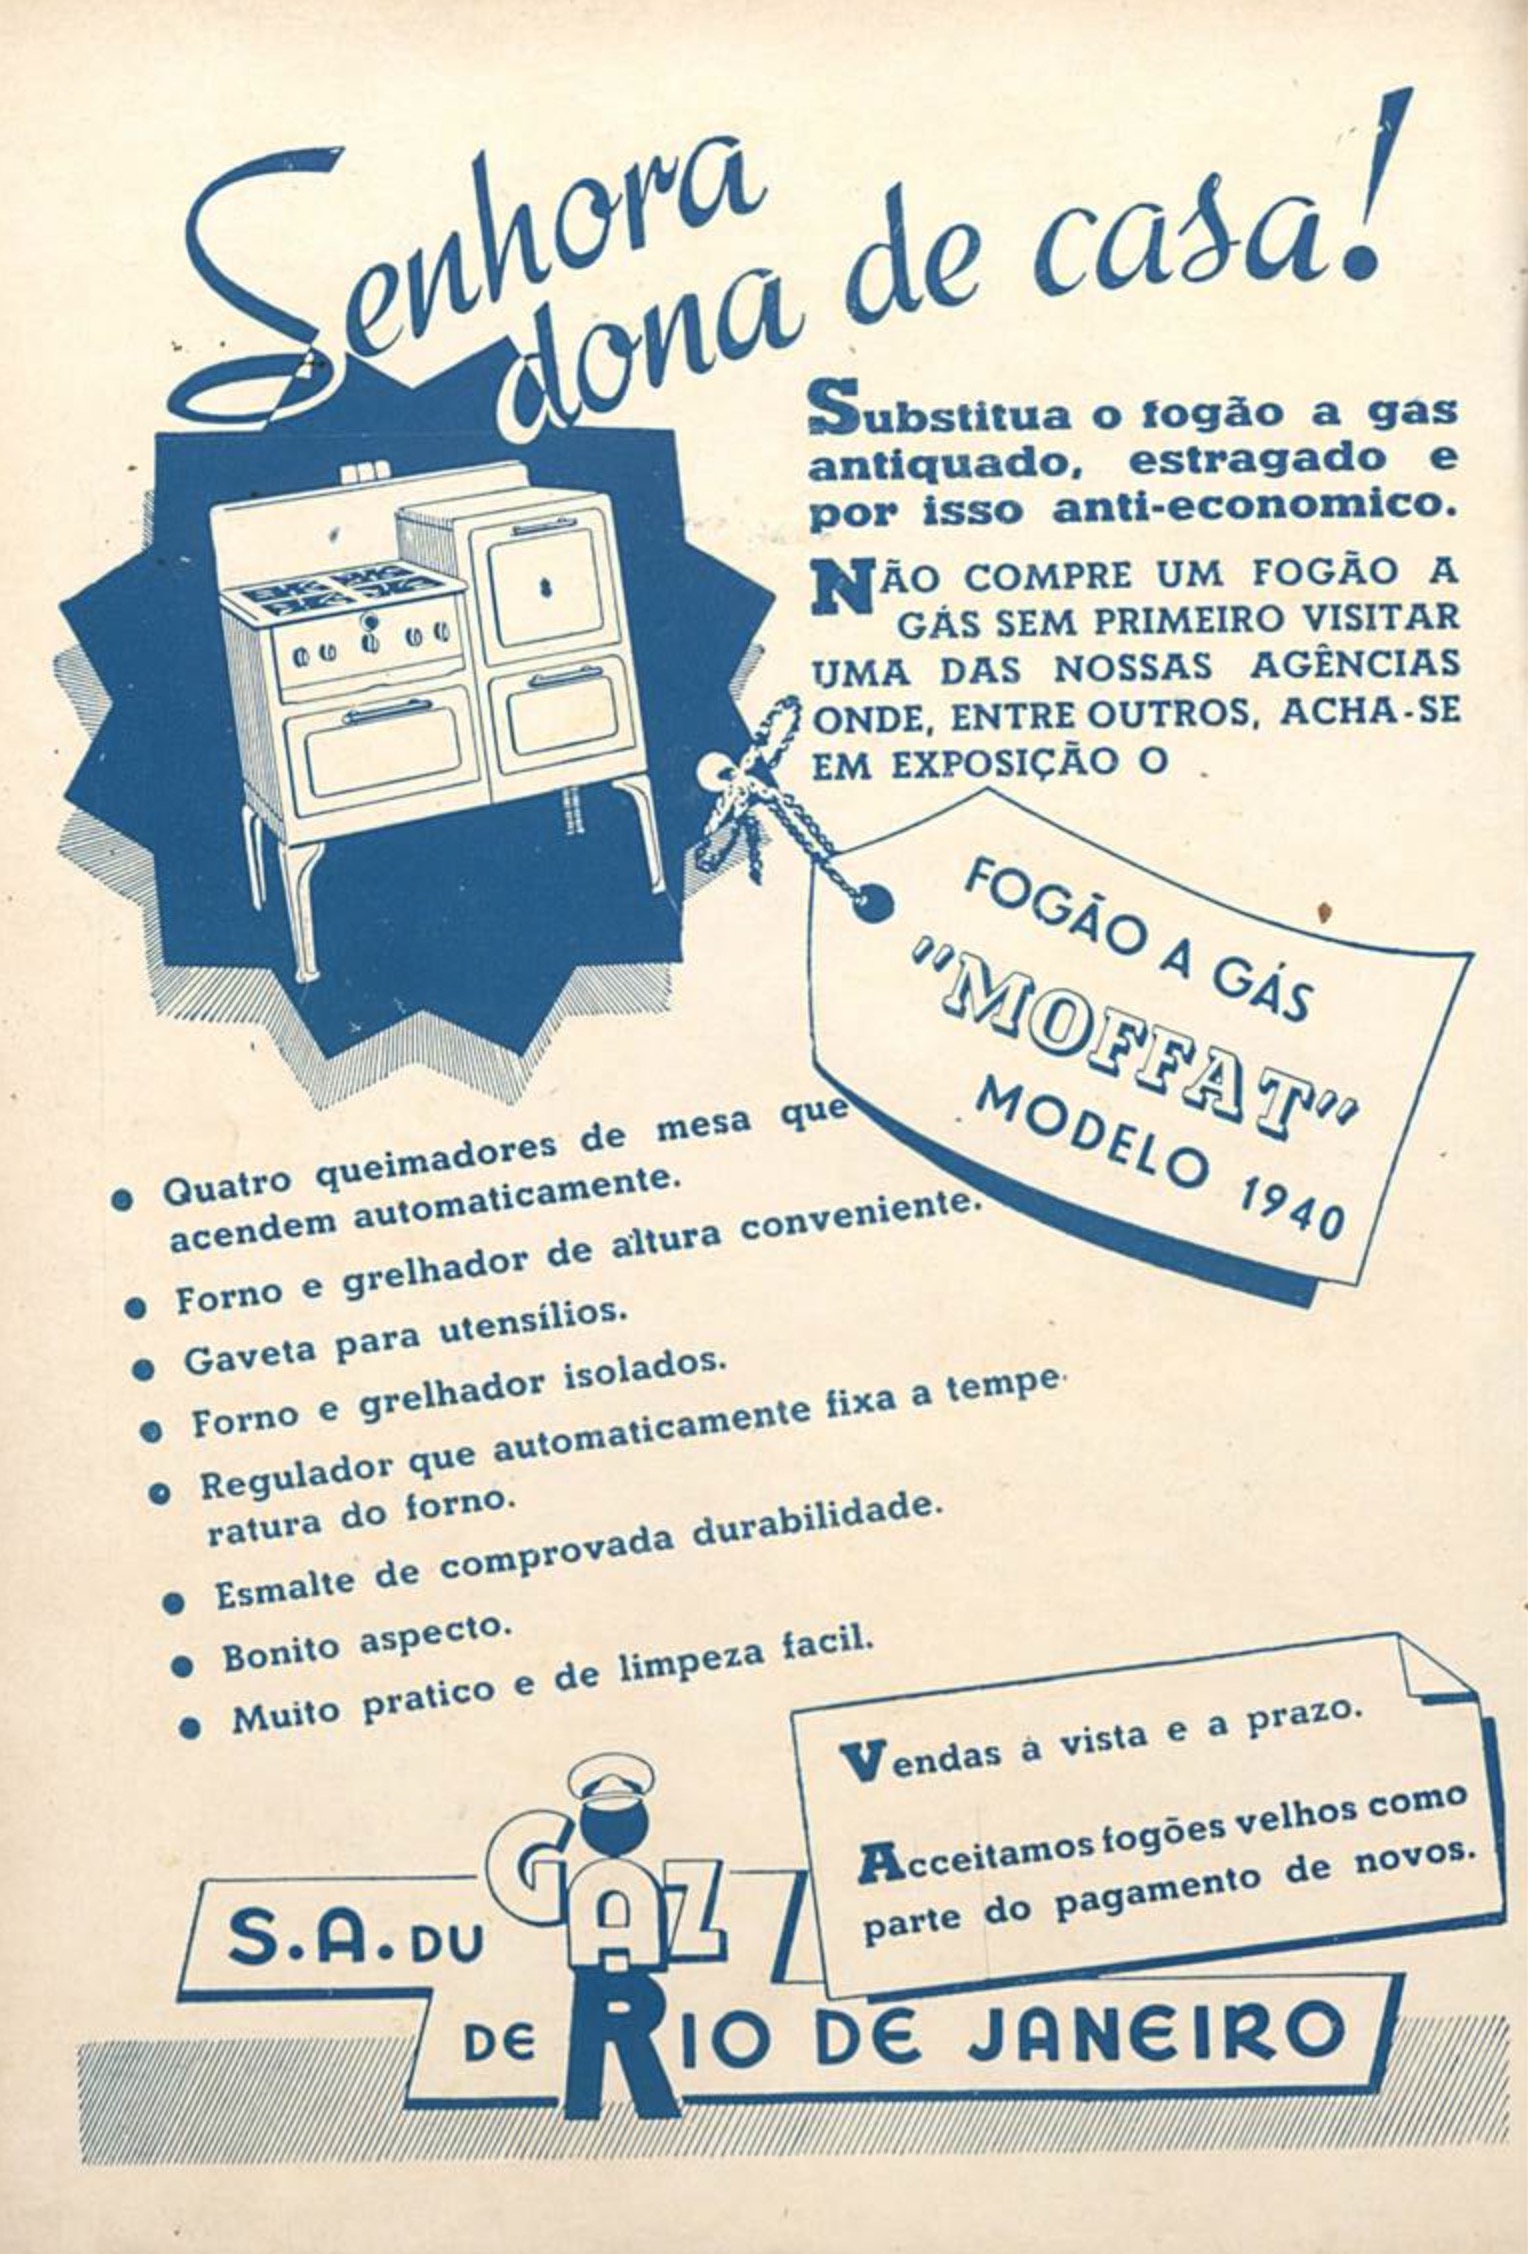 Anúncio veiculado em 1940 apresentava a inovação do fogão a gás da marca Moffat